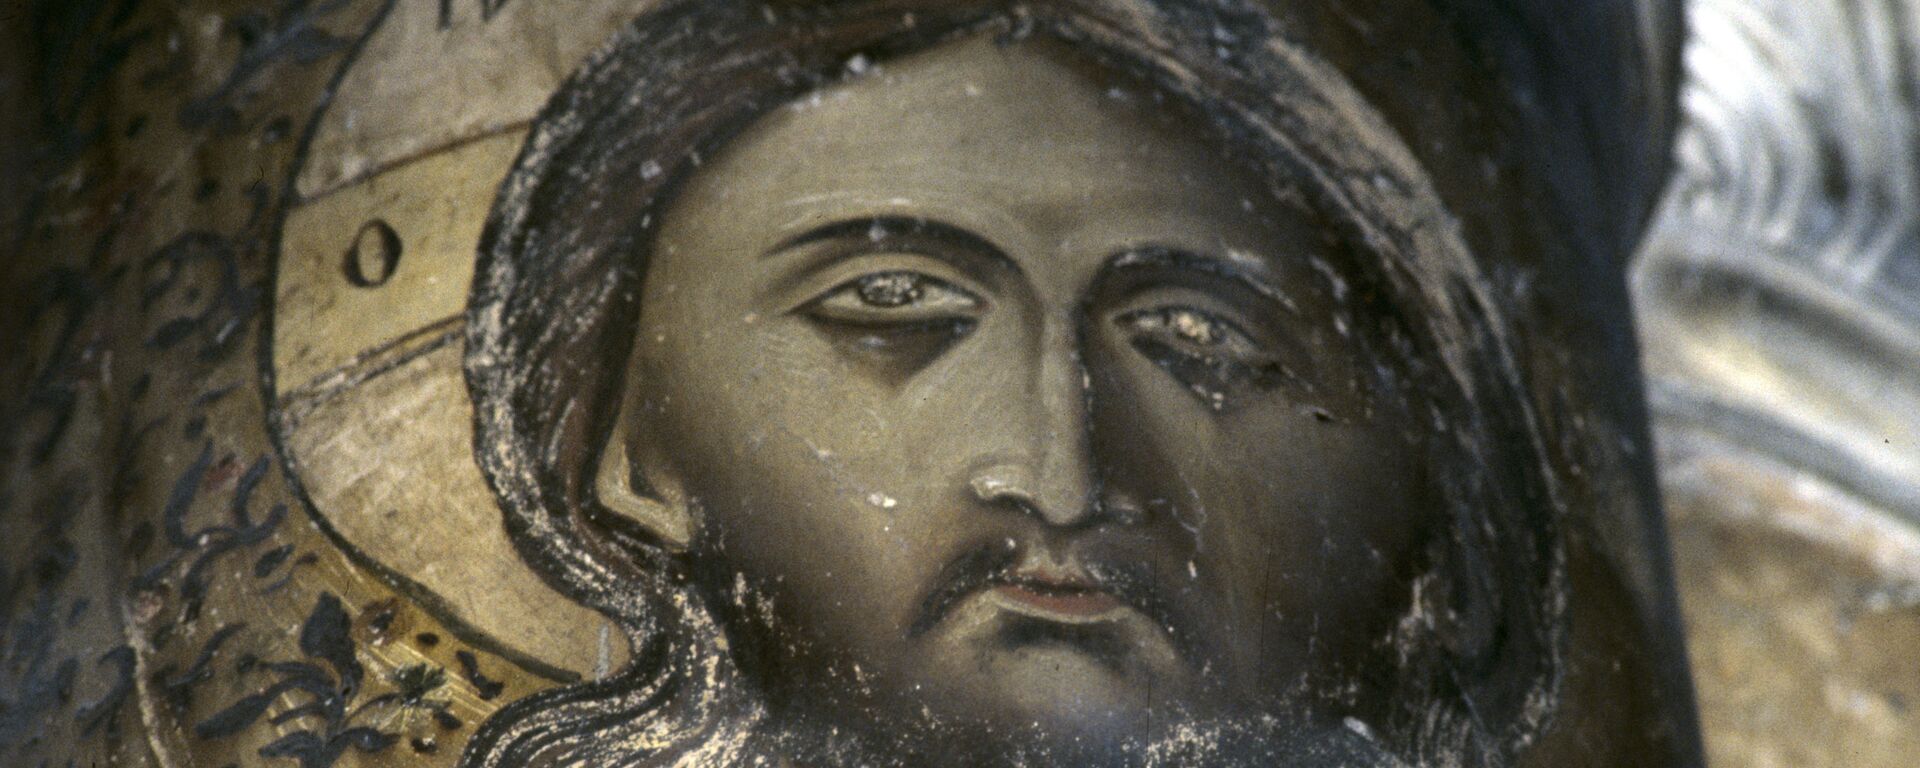 Fața lui Iisus Hristos pe o frescă bisericească - Sputnik Moldova, 1920, 26.04.2021